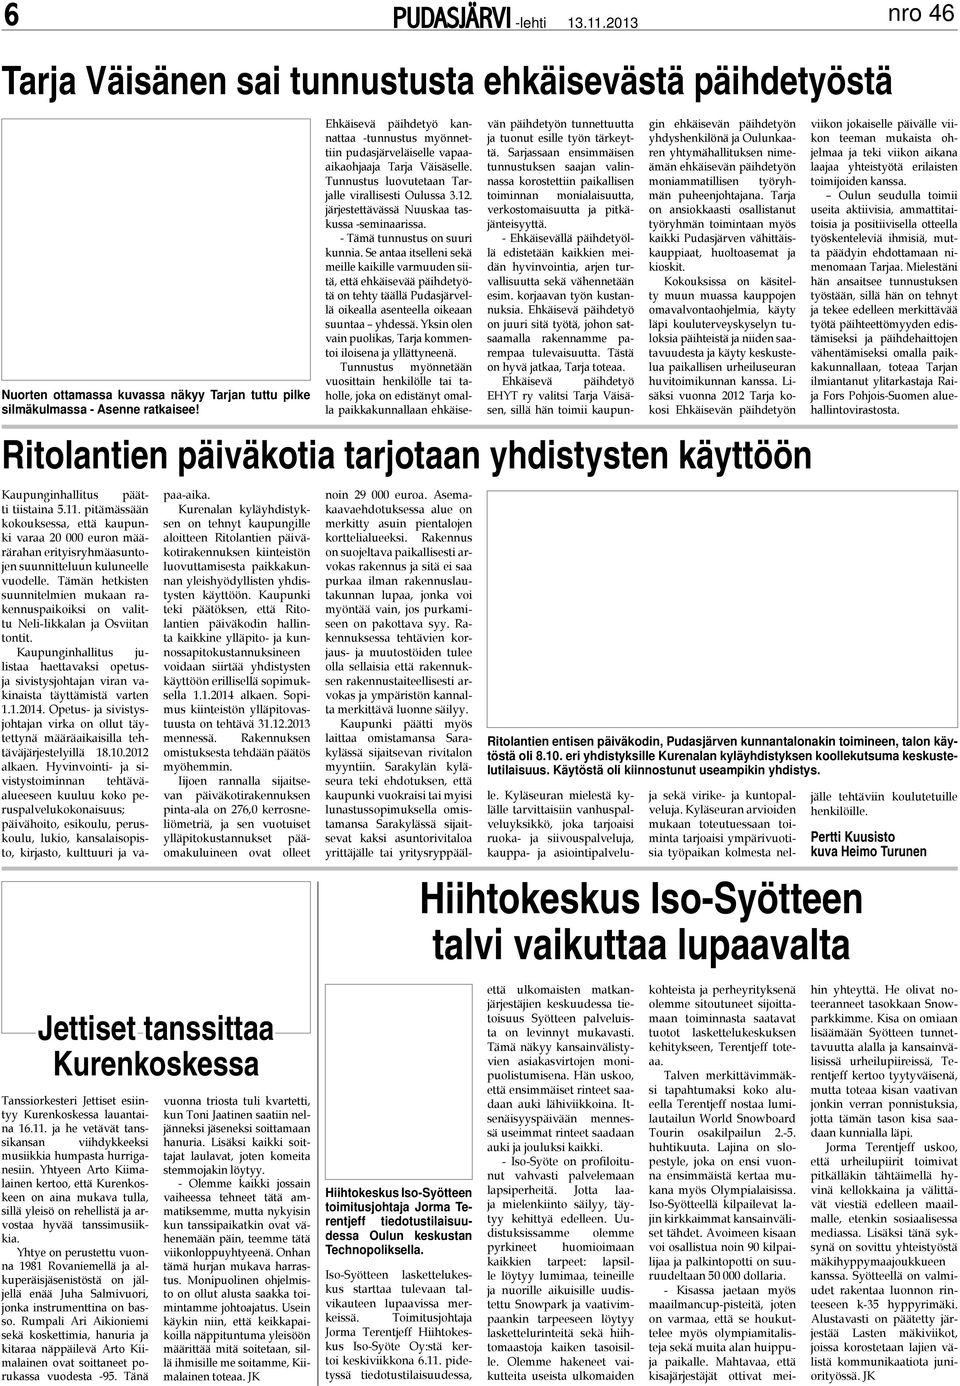 Oulun seudulla toimii useita aktiivisia, ammattitaitoisia ja positiivisella otteella työskenteleviä ihmisiä, mutta päädyin ehdottamaan nimenomaan Tarjaa.